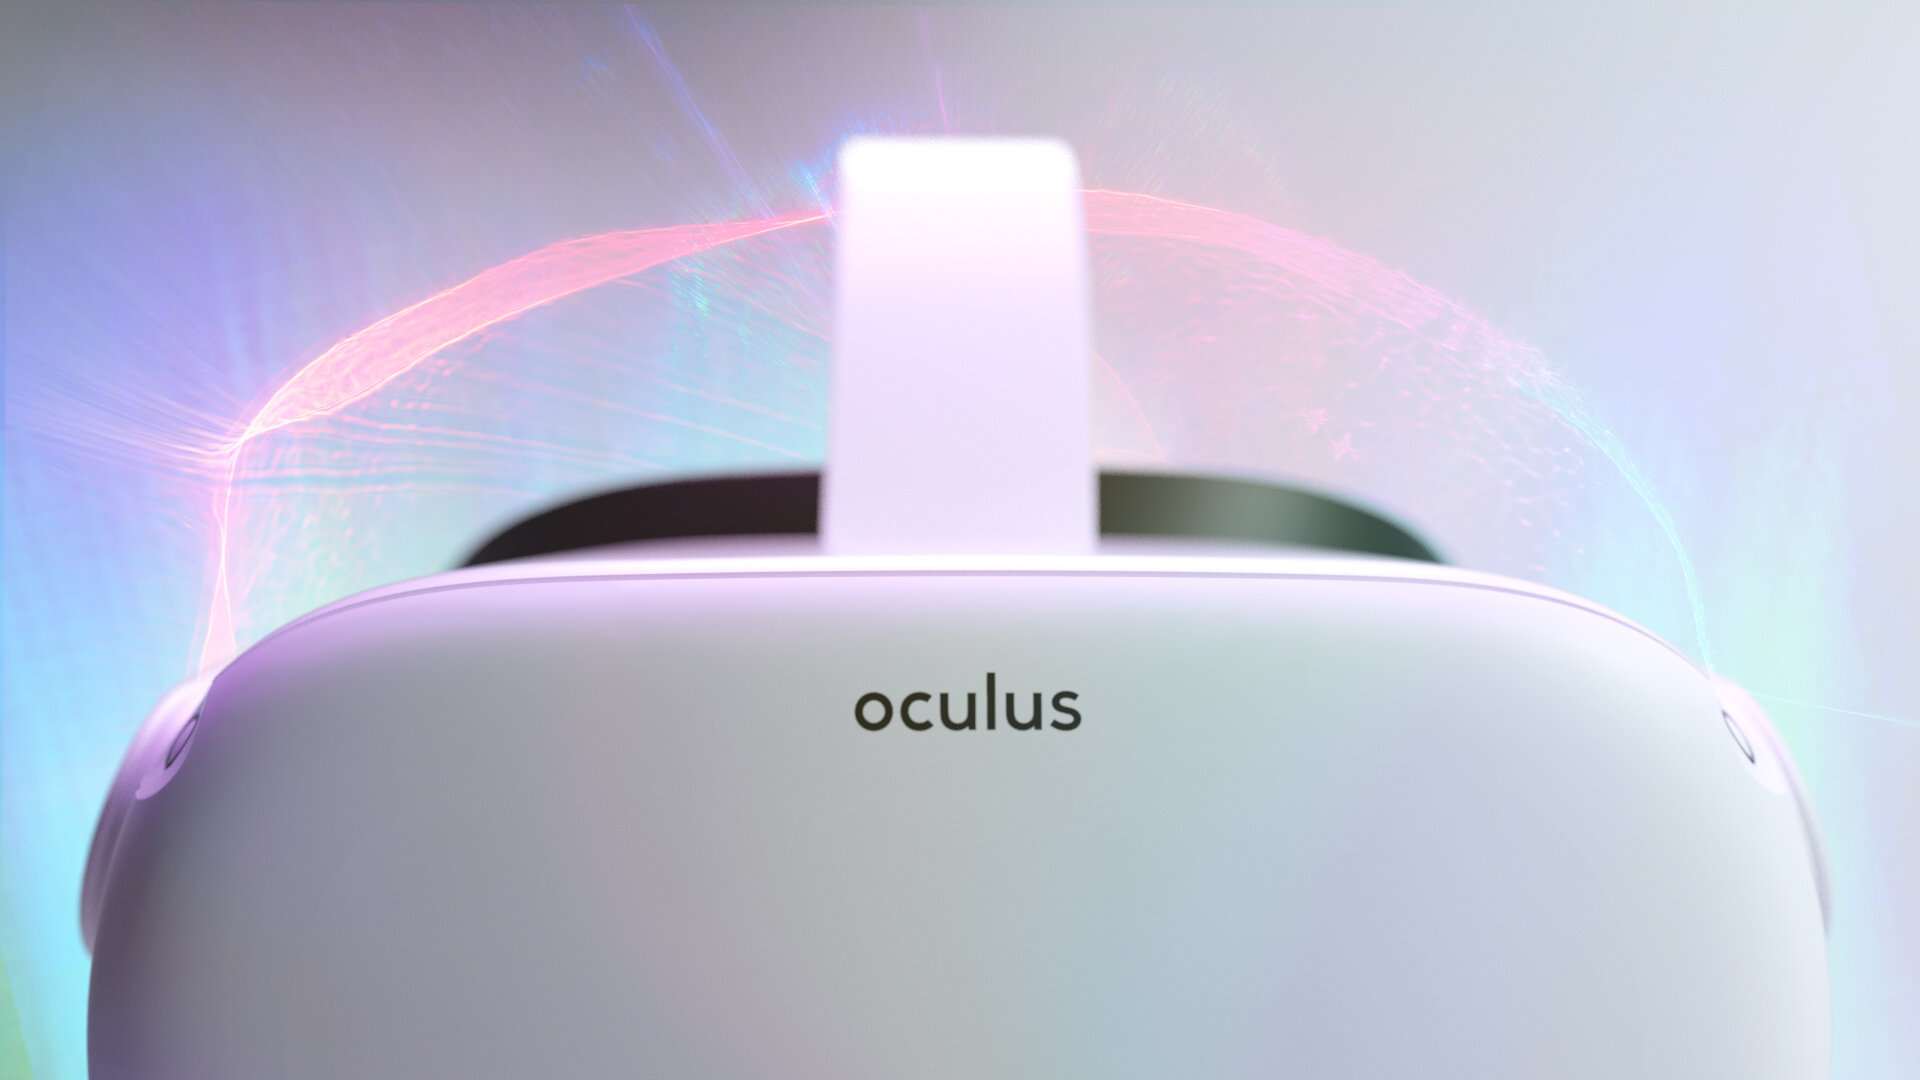 Oculus_Color_V01_01.jpg